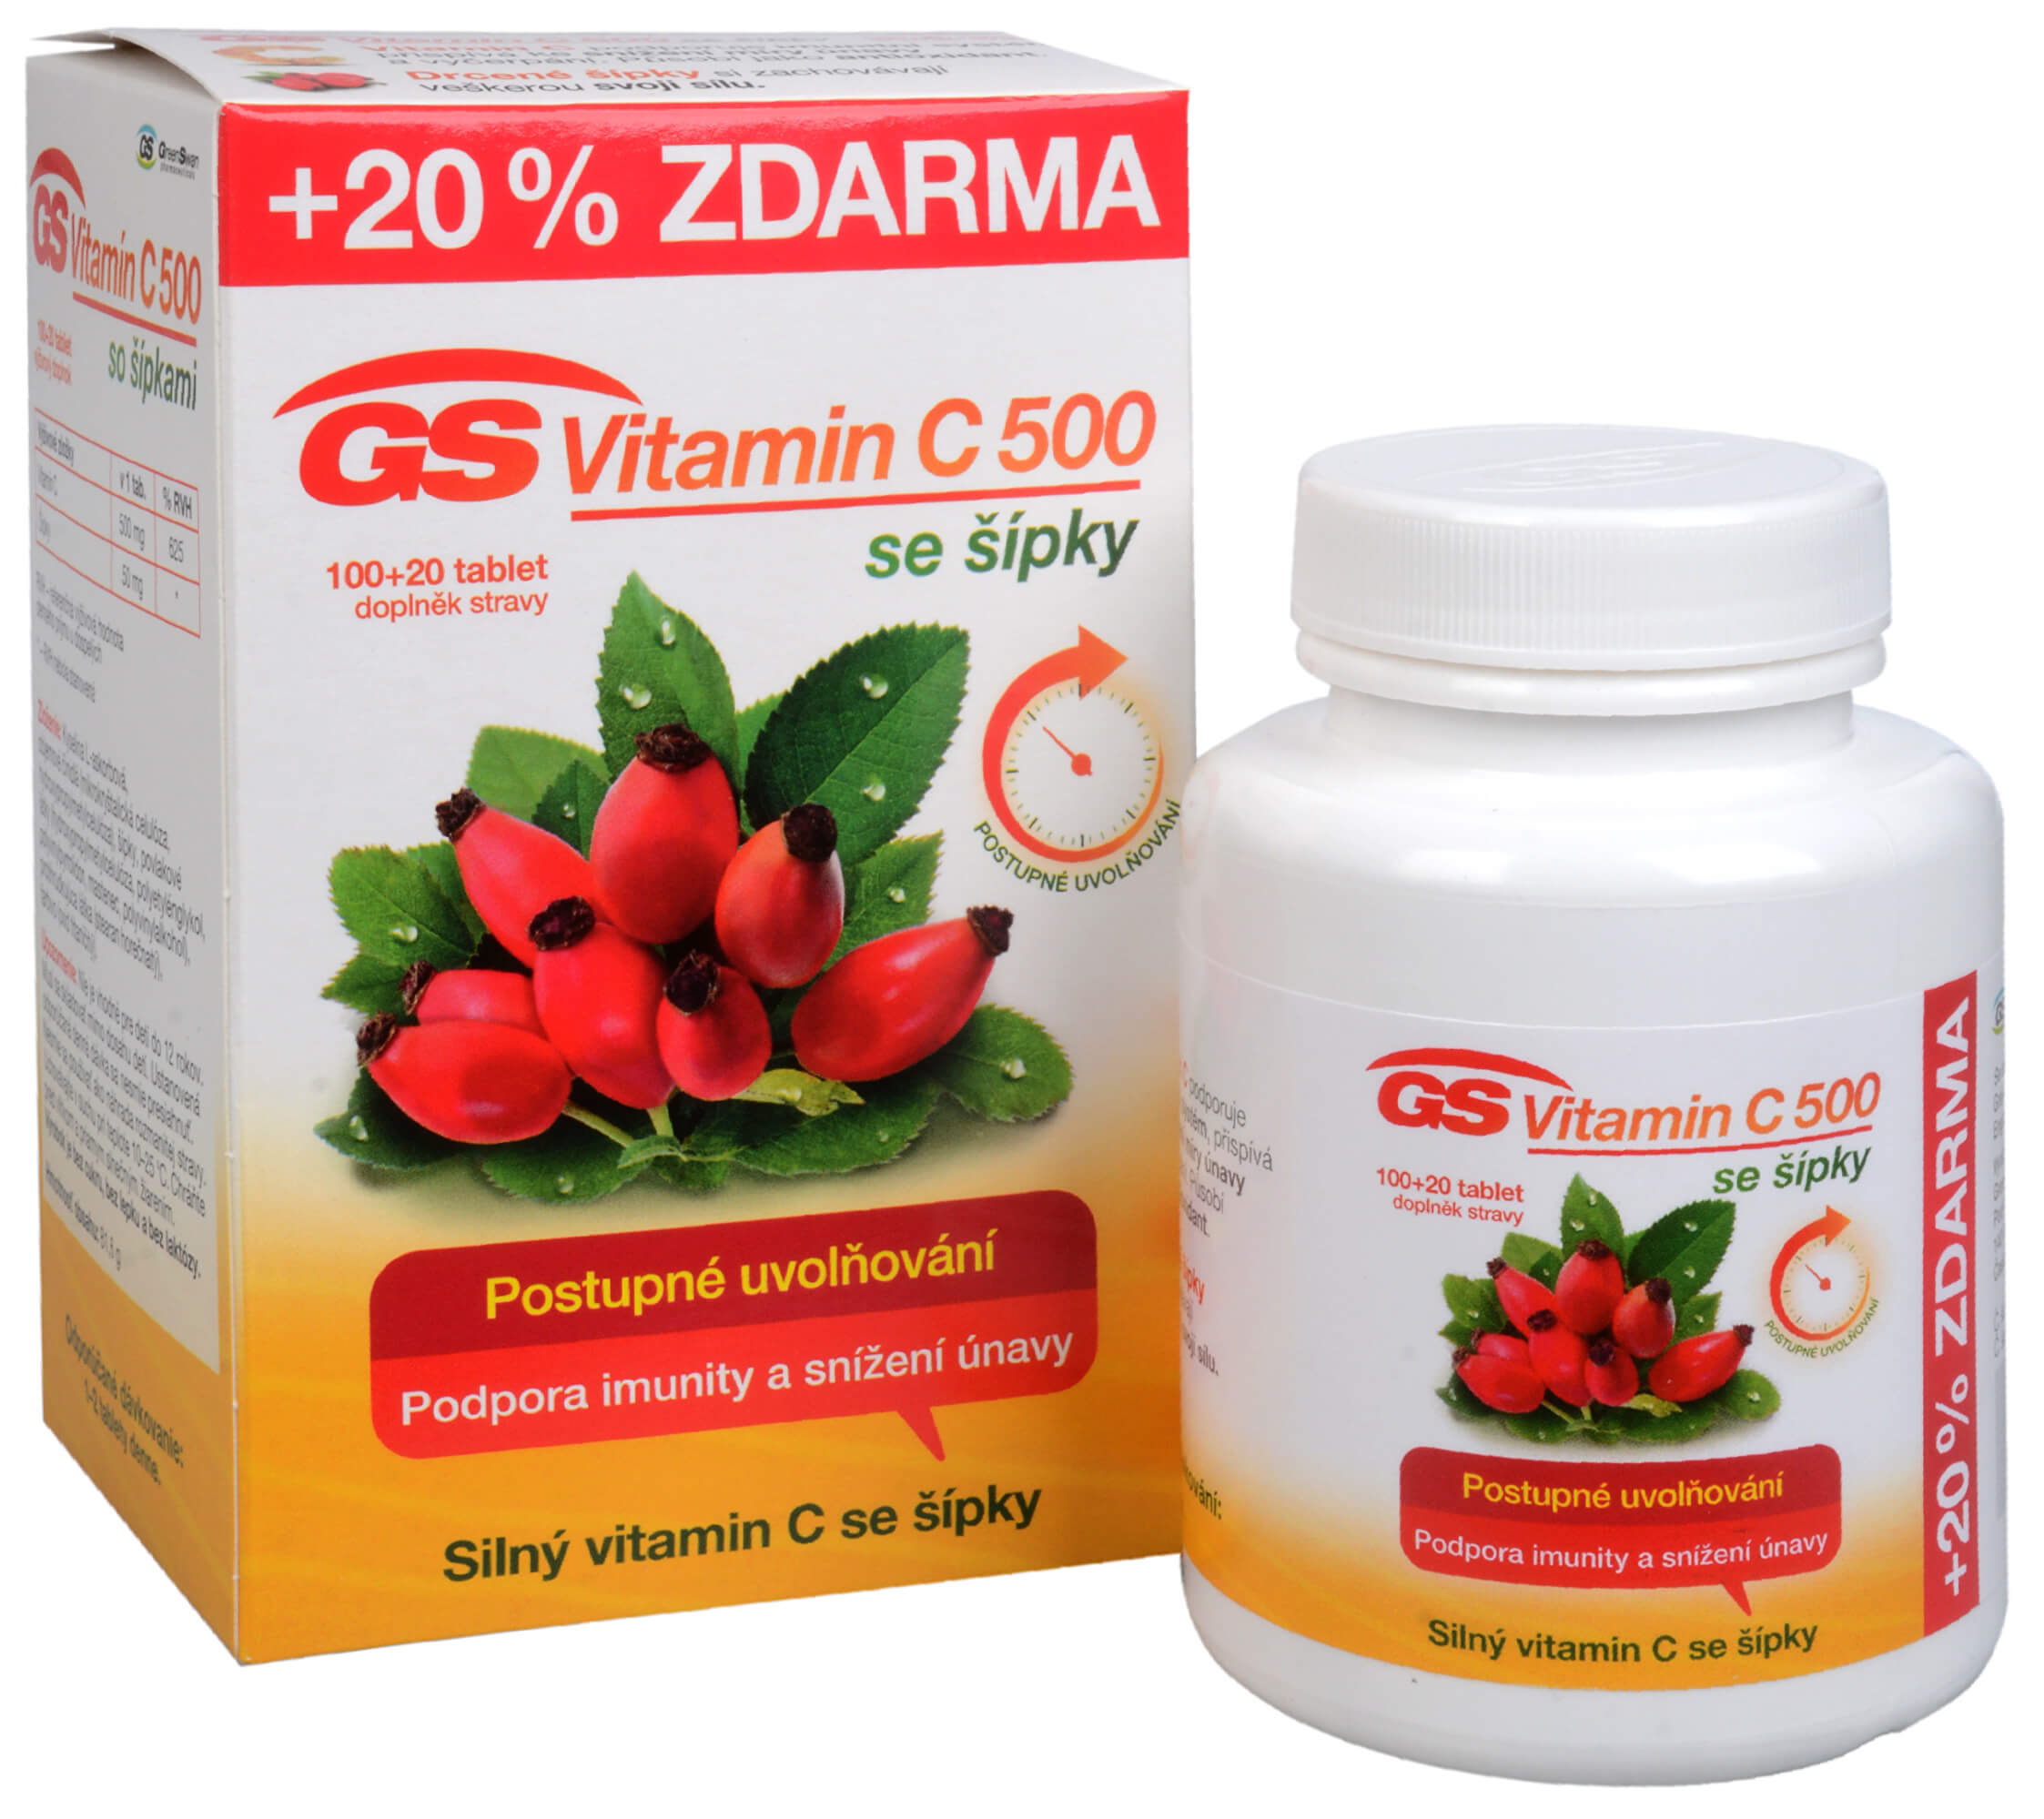 Zobrazit detail výrobku Green-Swan GS Vitamin C 500 + šípky 100+20 tablet ZDARMA + 2 měsíce na vrácení zboží